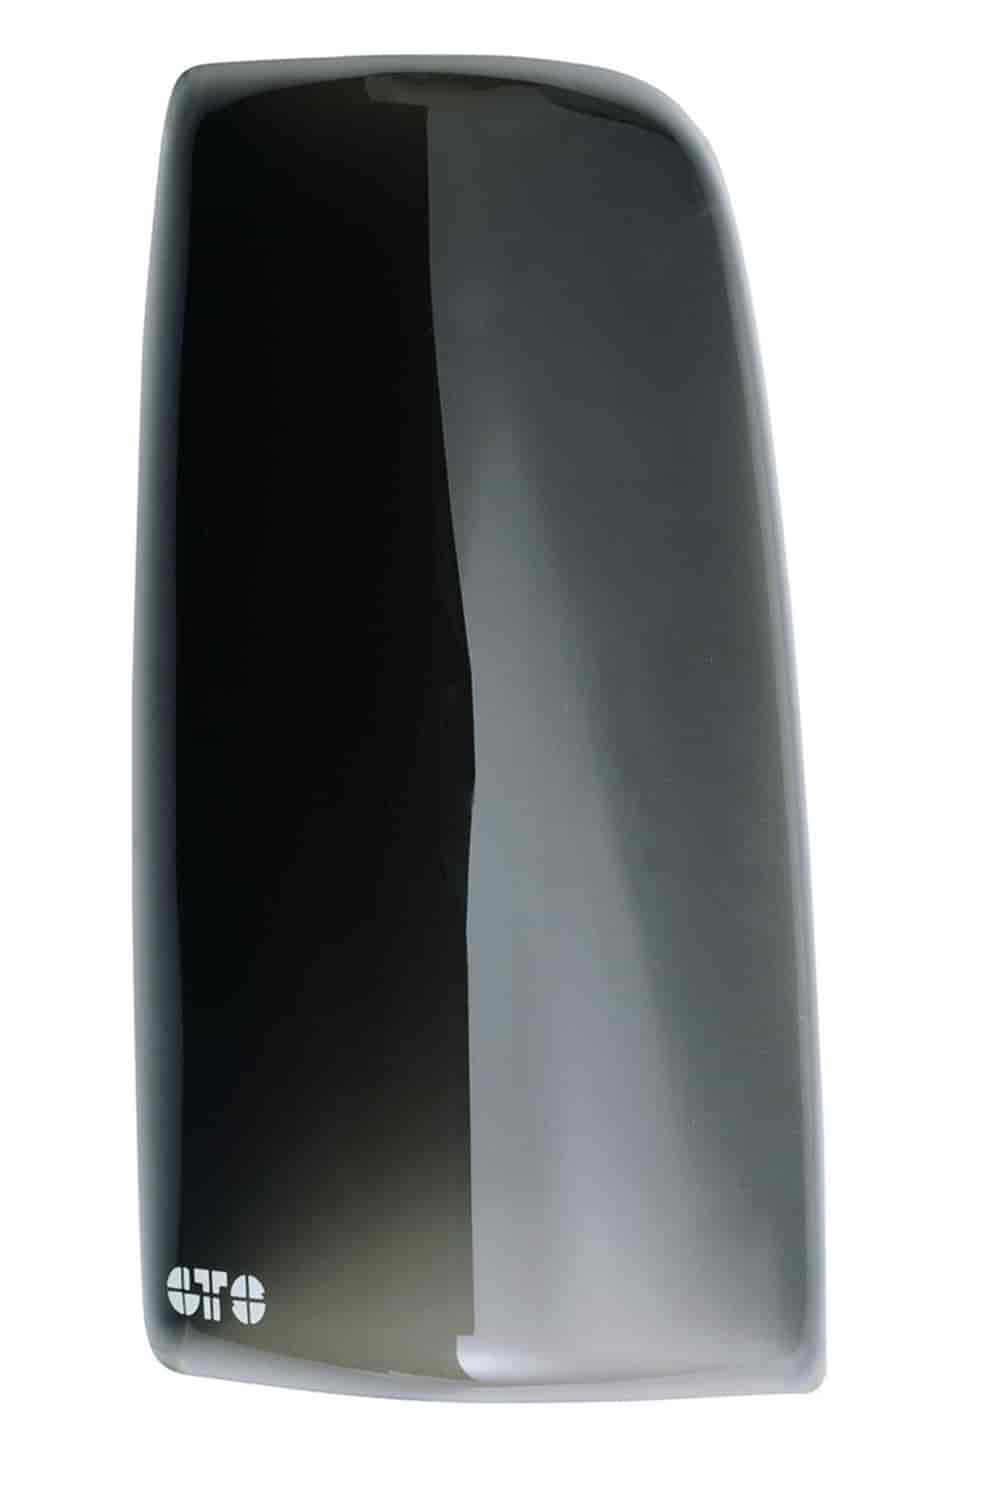 Blackout Taillight Covers 2007-13 Sierra Fleetside